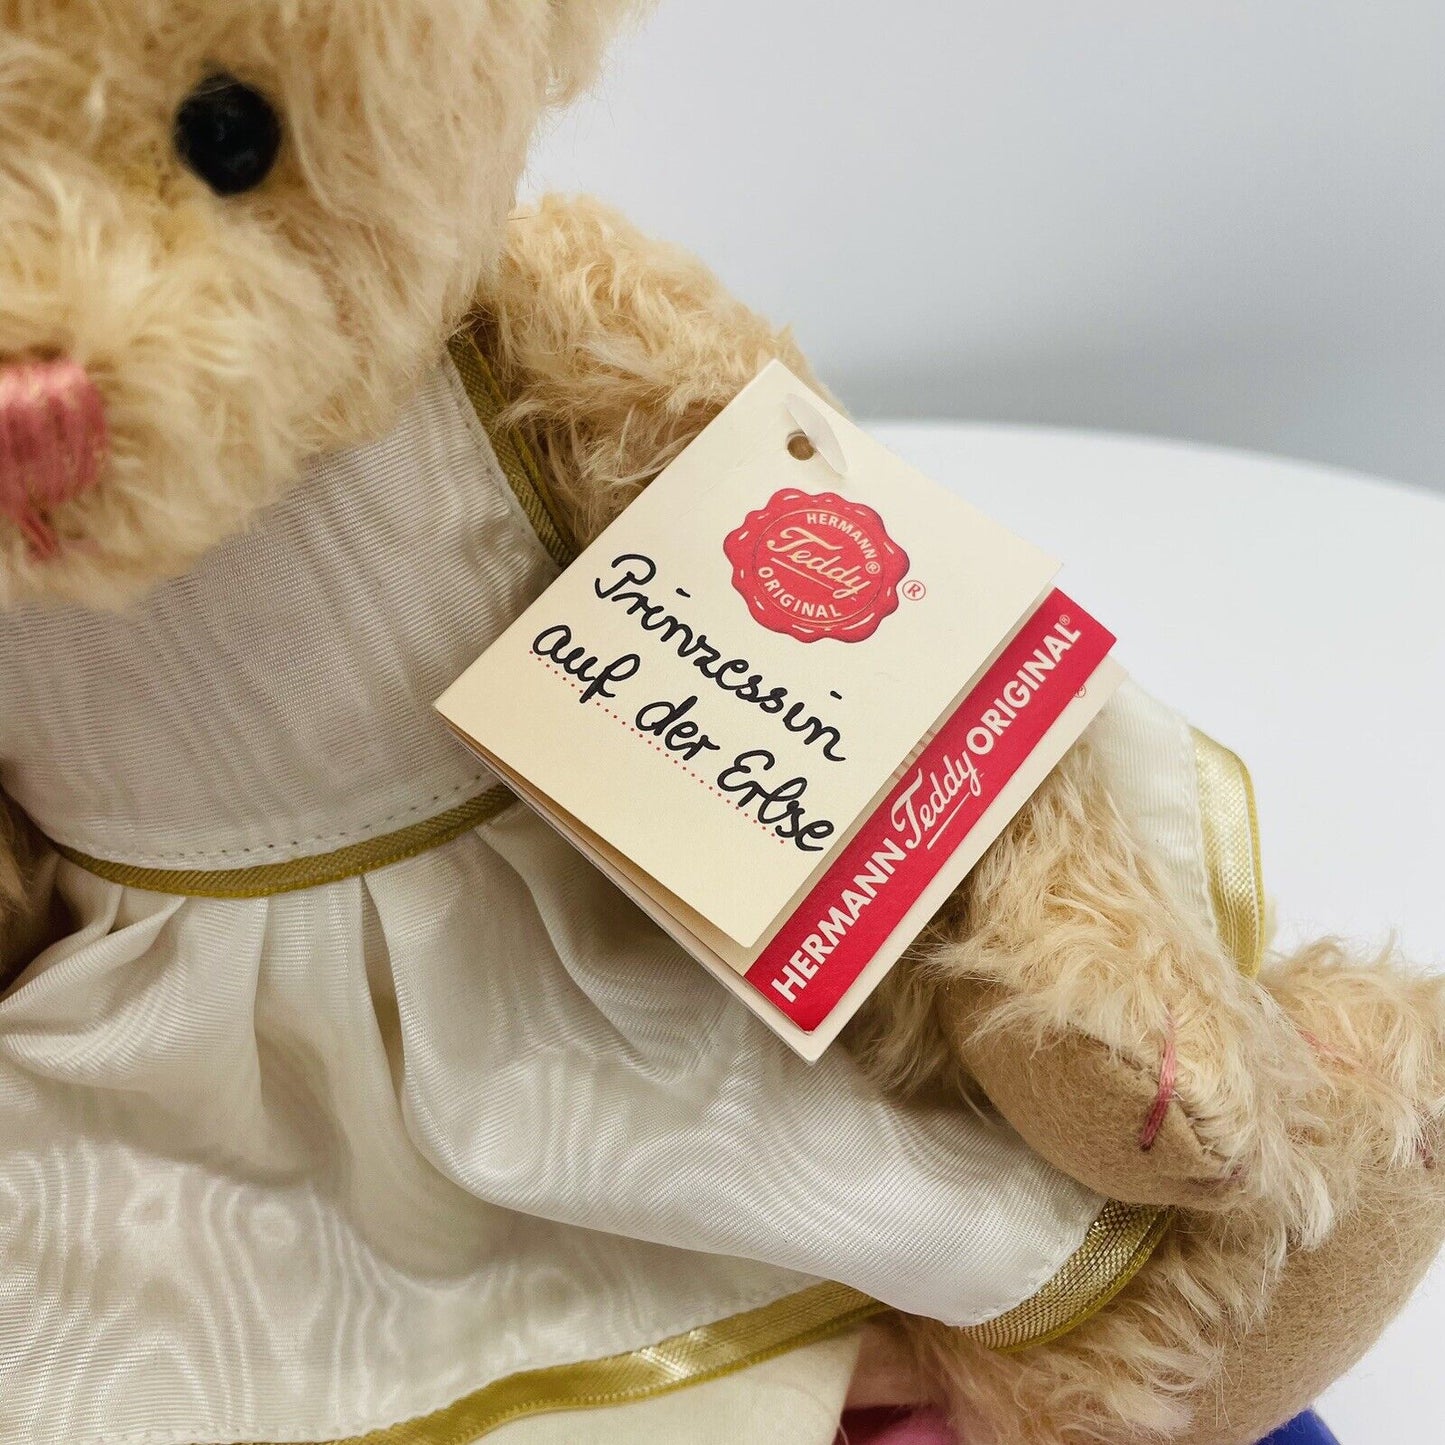 Hermann Teddy Märchenserie Teddybär Prinzessin auf der Erbse limitiert 600